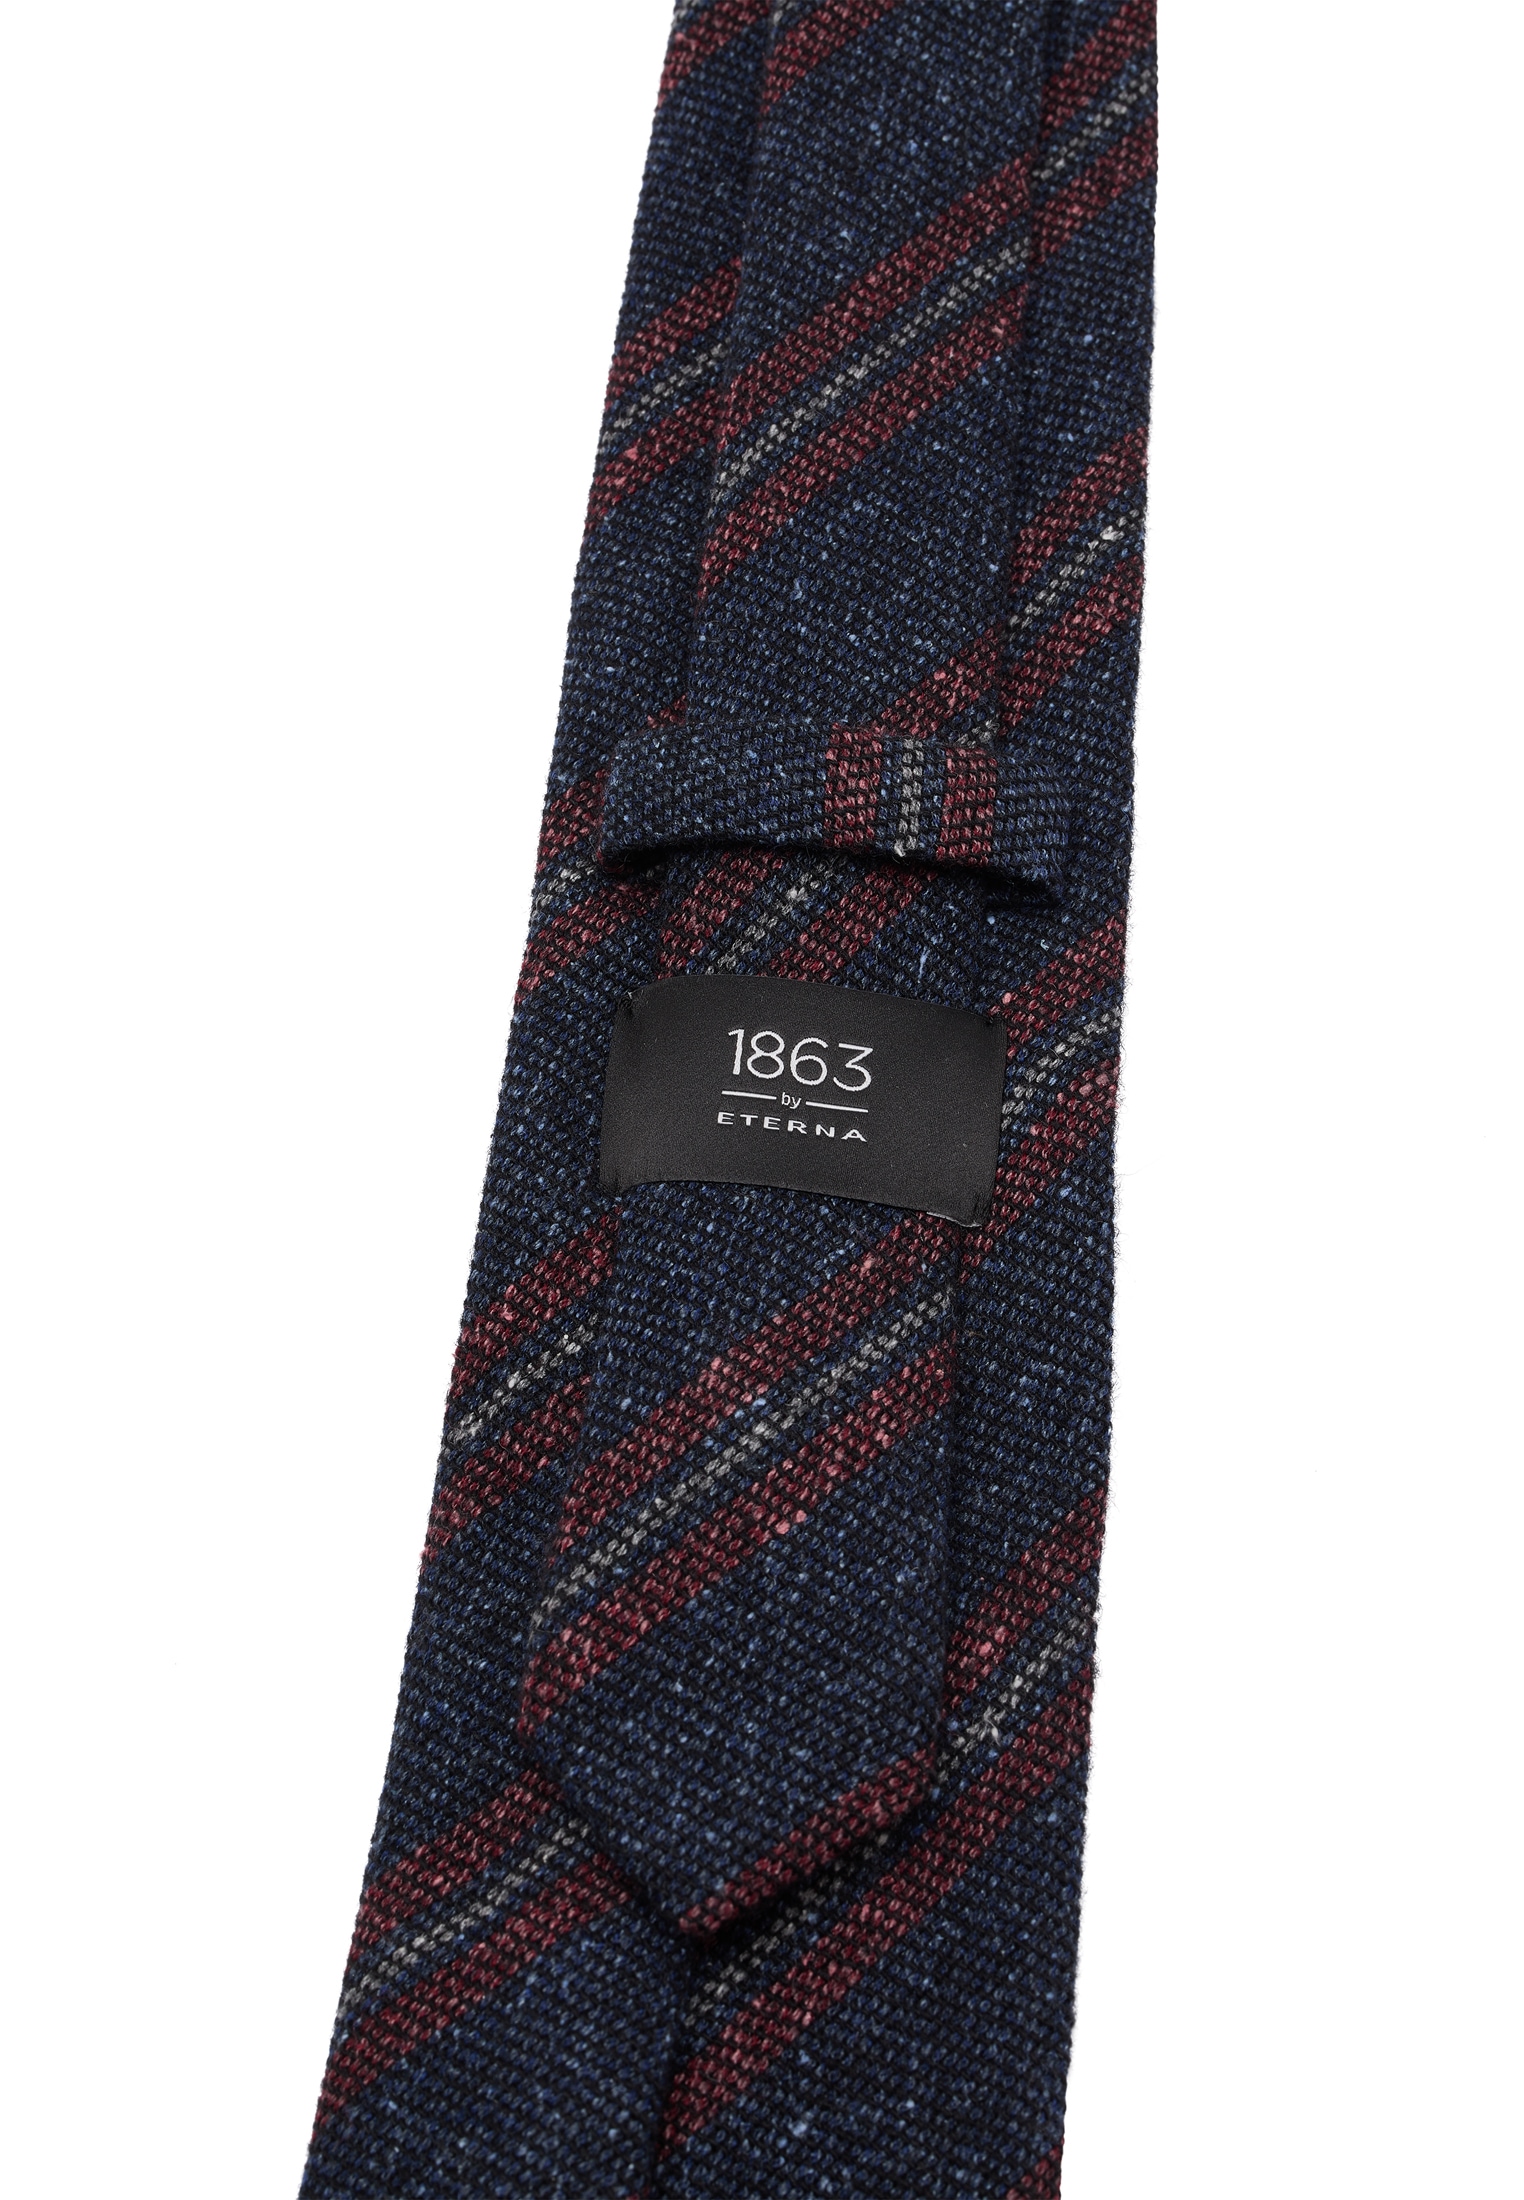 Eterna bestellen | BAUR Krawatte online